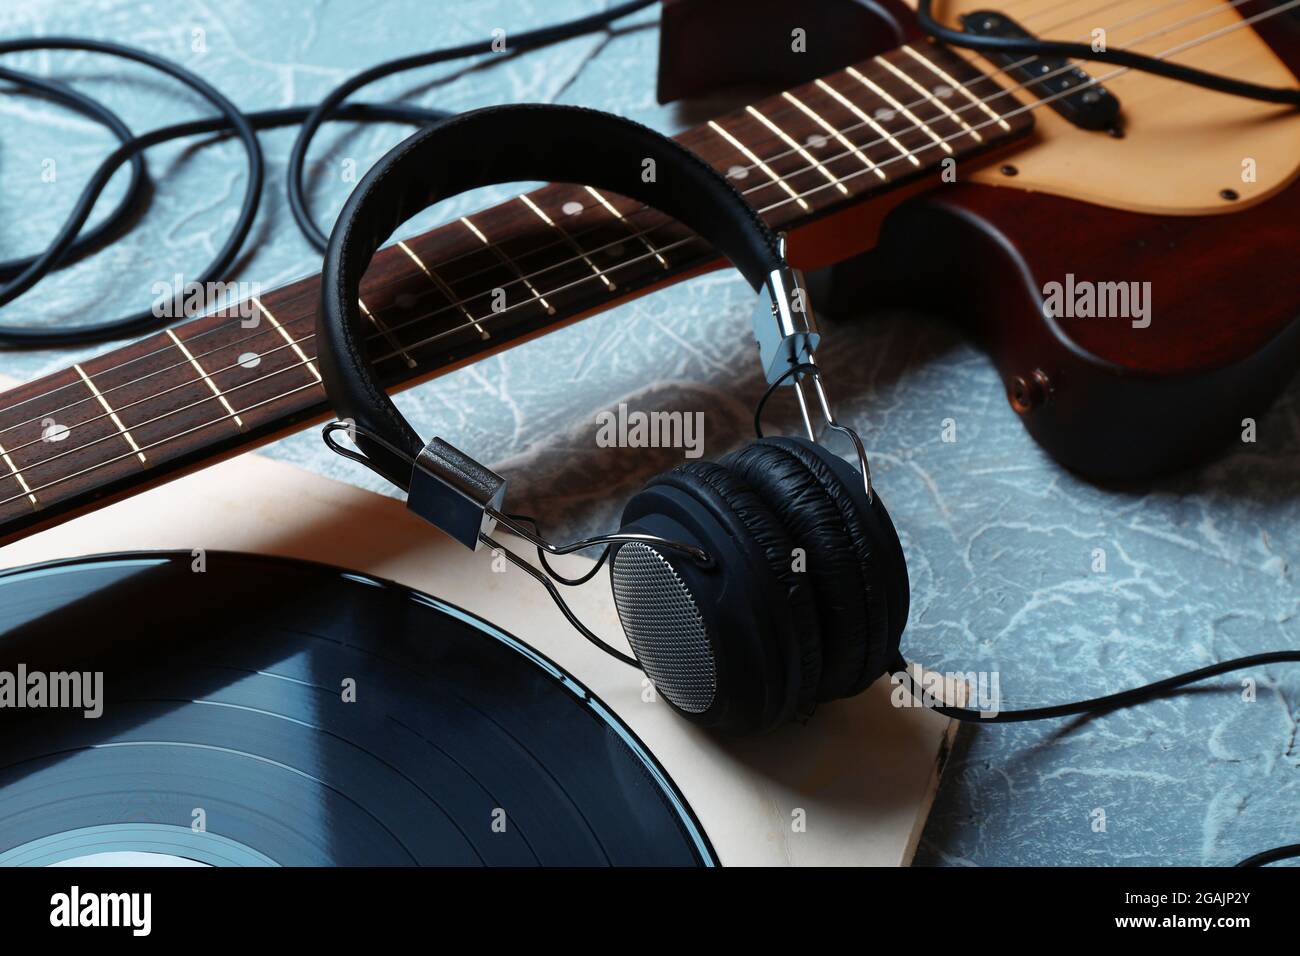 E-Gitarre und Kopfhörer mit Musik-Zubehör auf grauem Hintergrund  Stockfotografie - Alamy